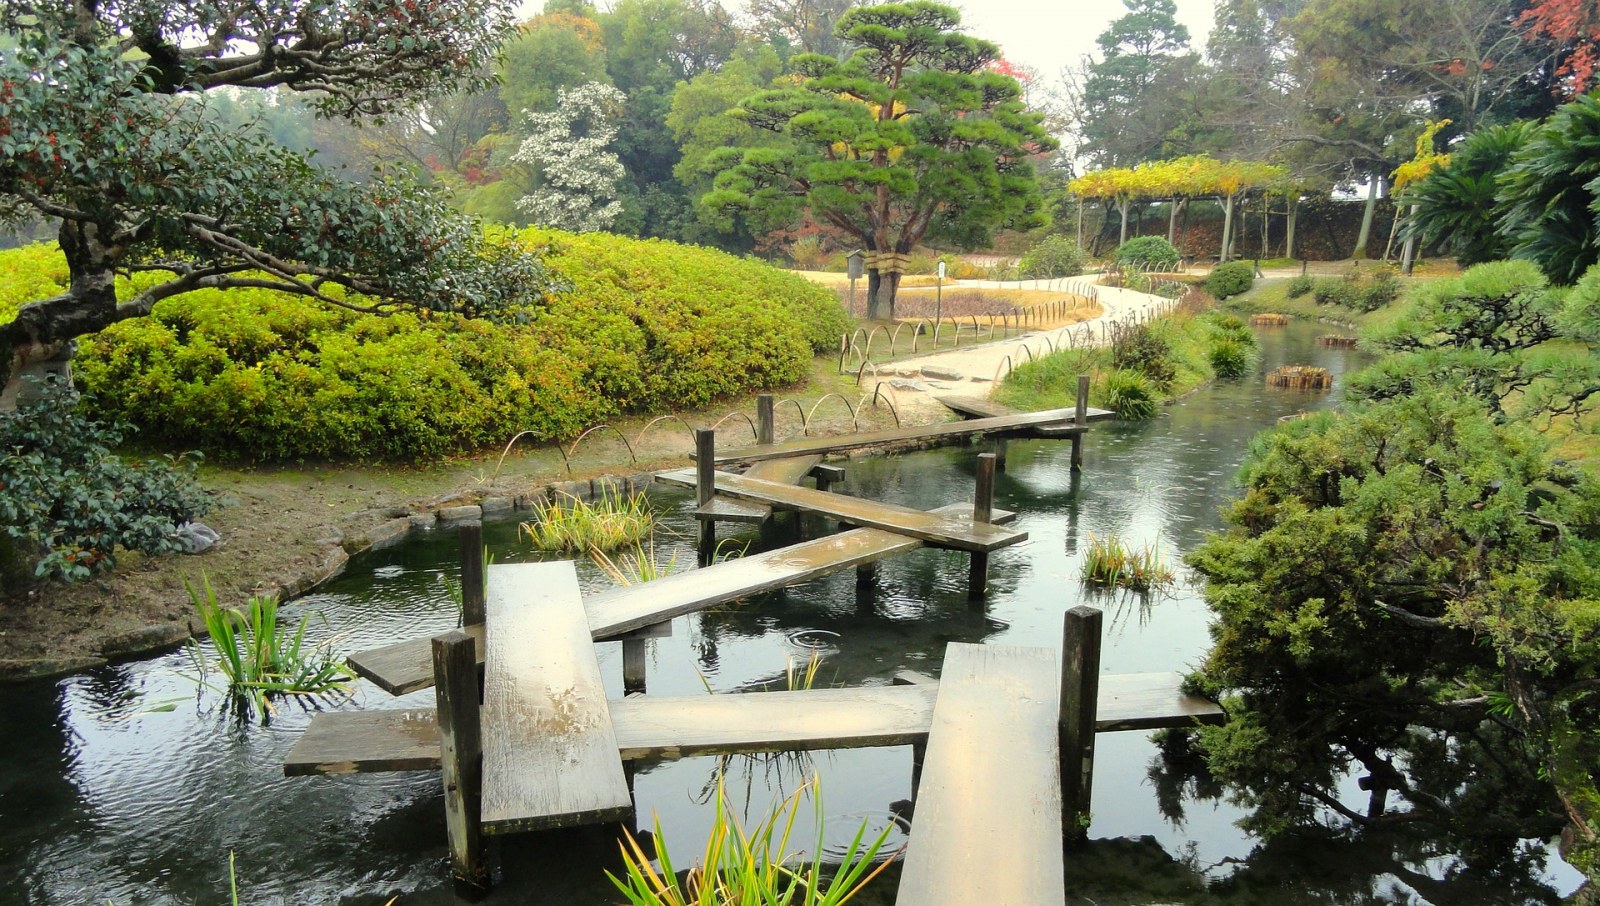 Korakuen Garden, okayama, Japan